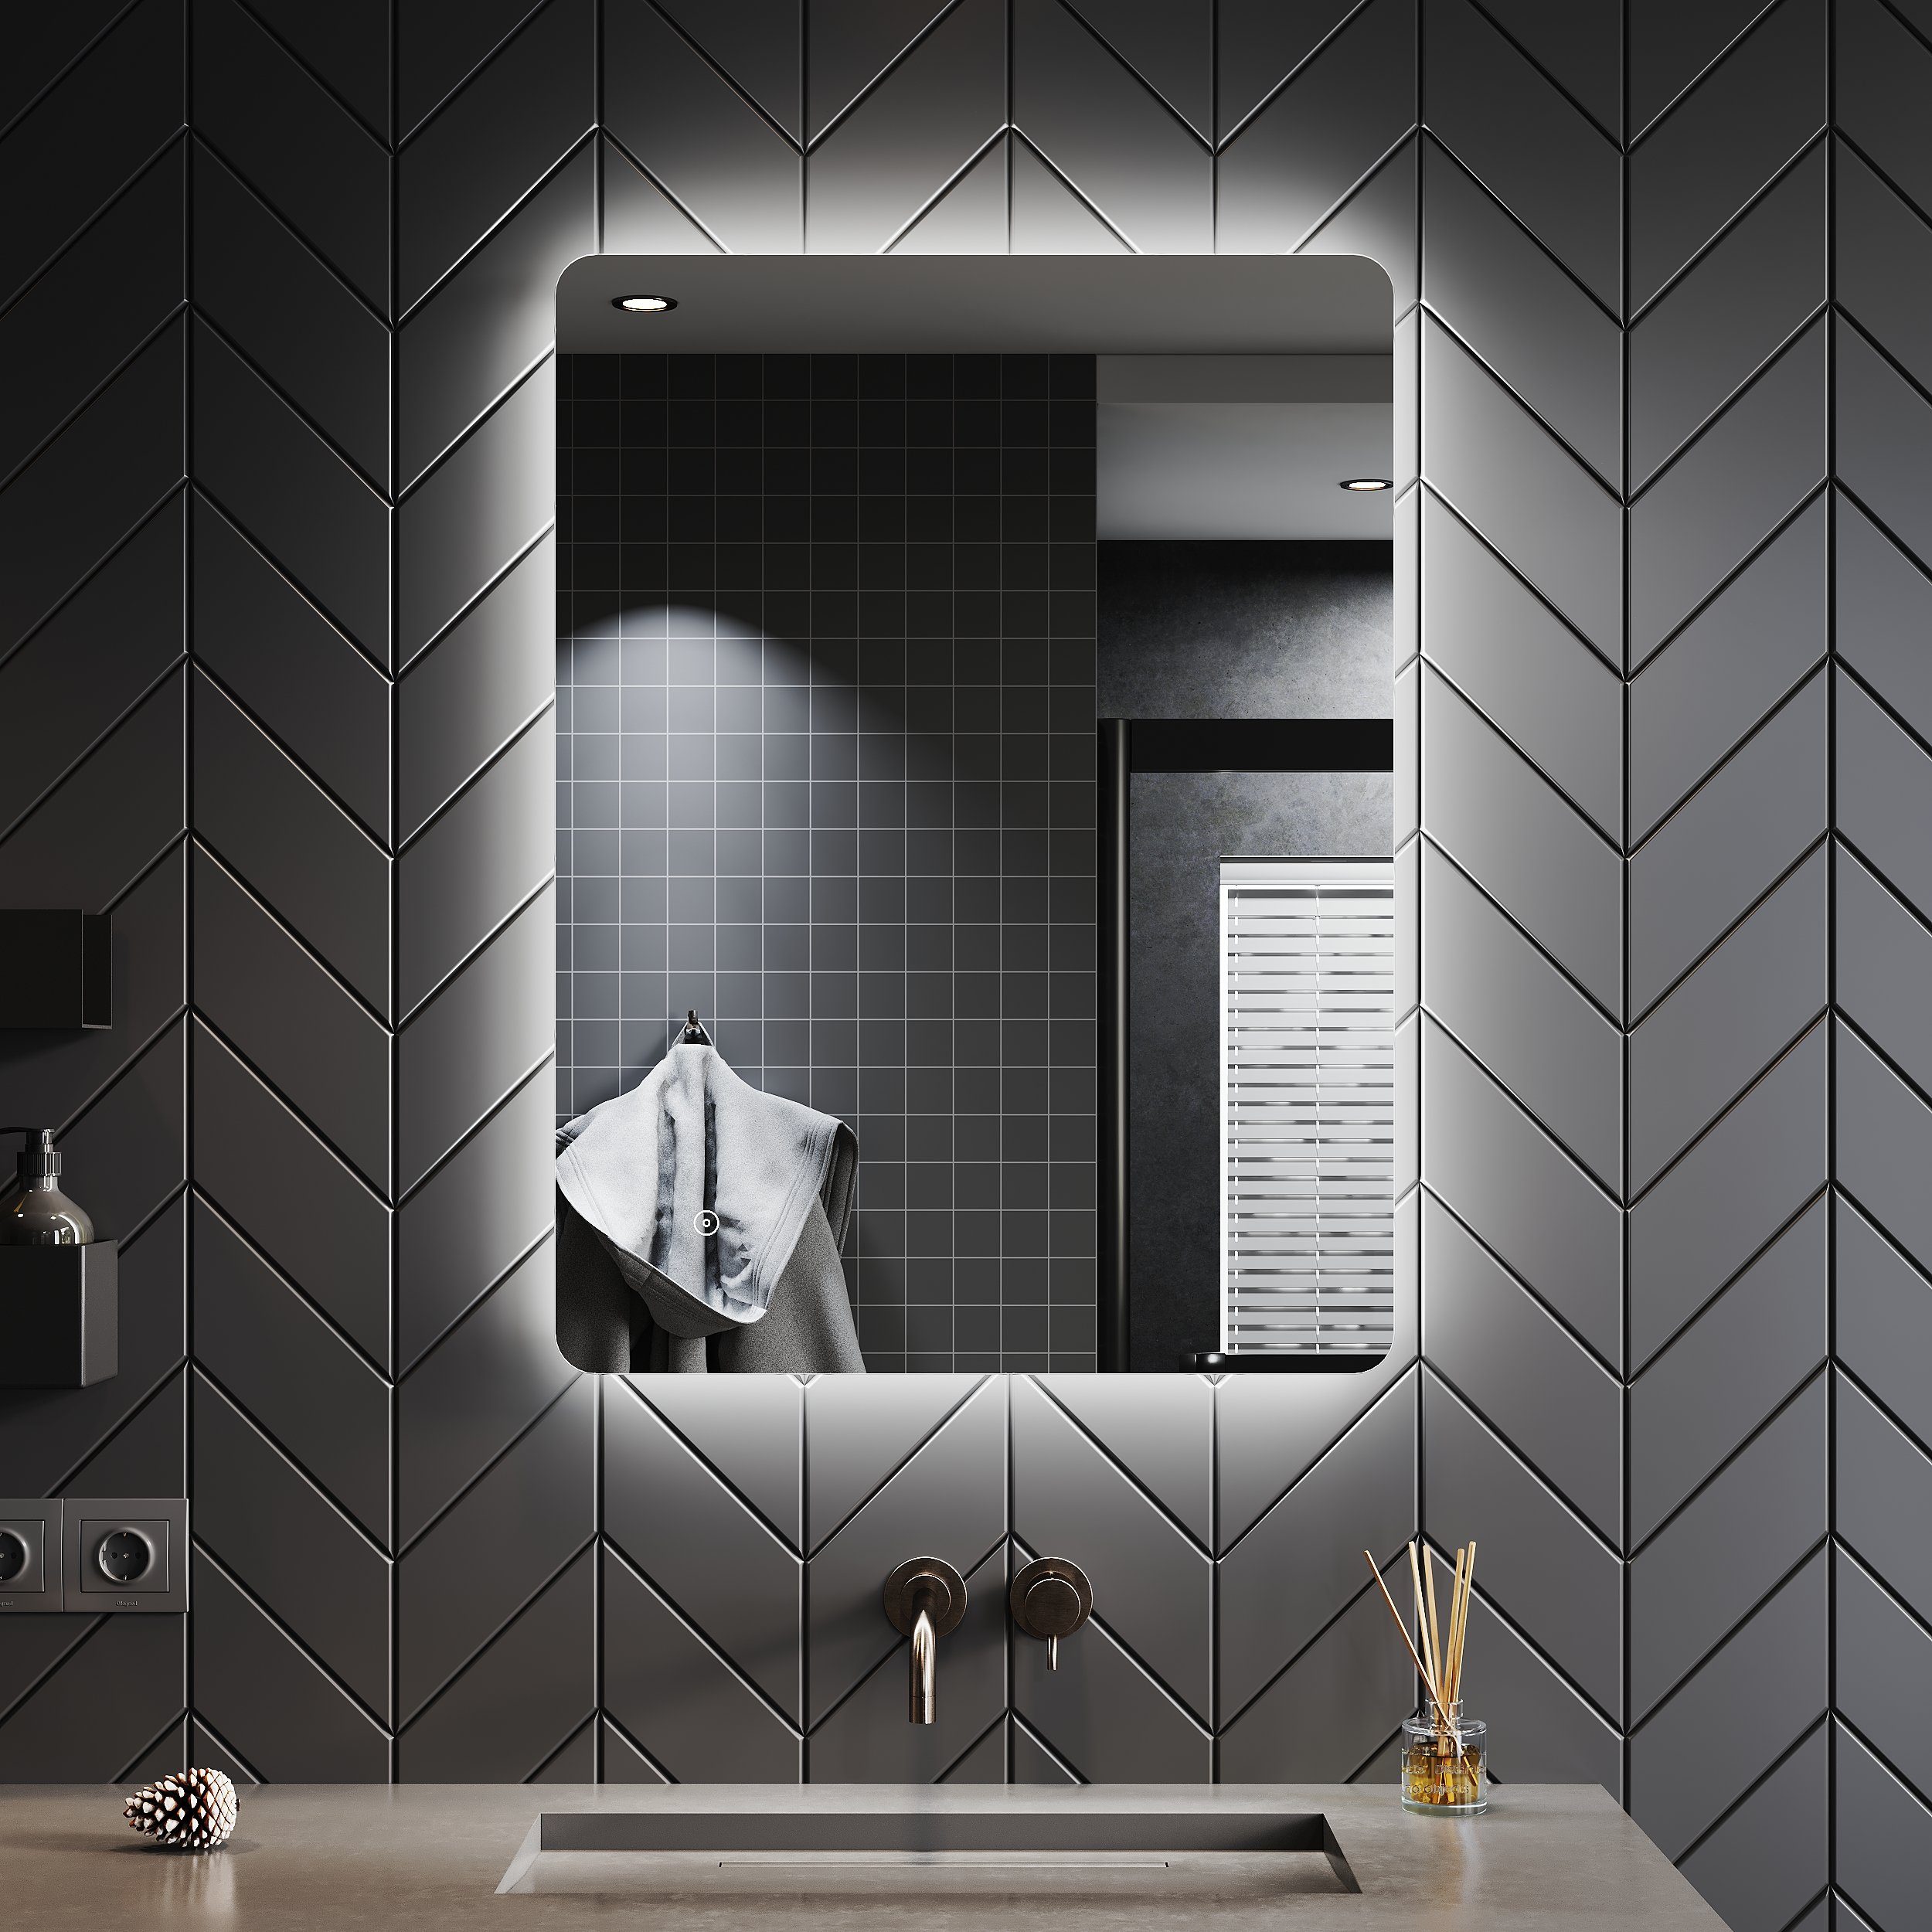 SONNI Badspiegel Badezimmerspiegel mit Beleuchtung, Energiesparend Antibeschlage, Wandspiegel,IP 80 x 44, LED, Rasierspiegel, 60